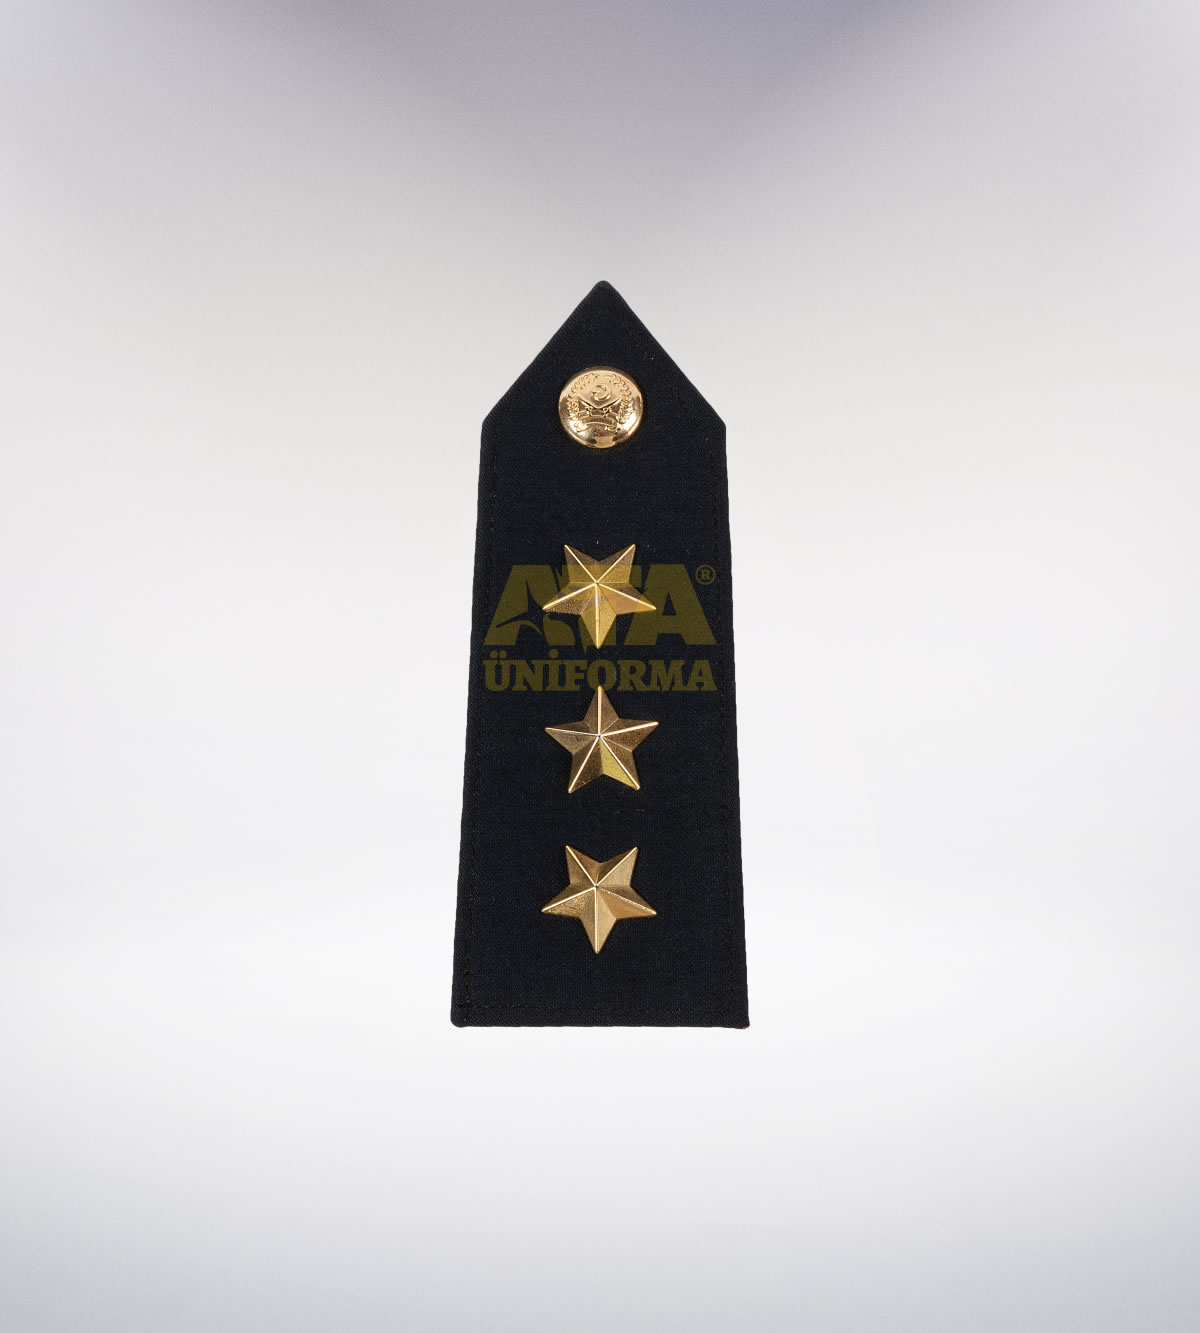 ATA-1019 Polis apolet - polis elbiseleri | polis üniformaları | polis kıyafetleri